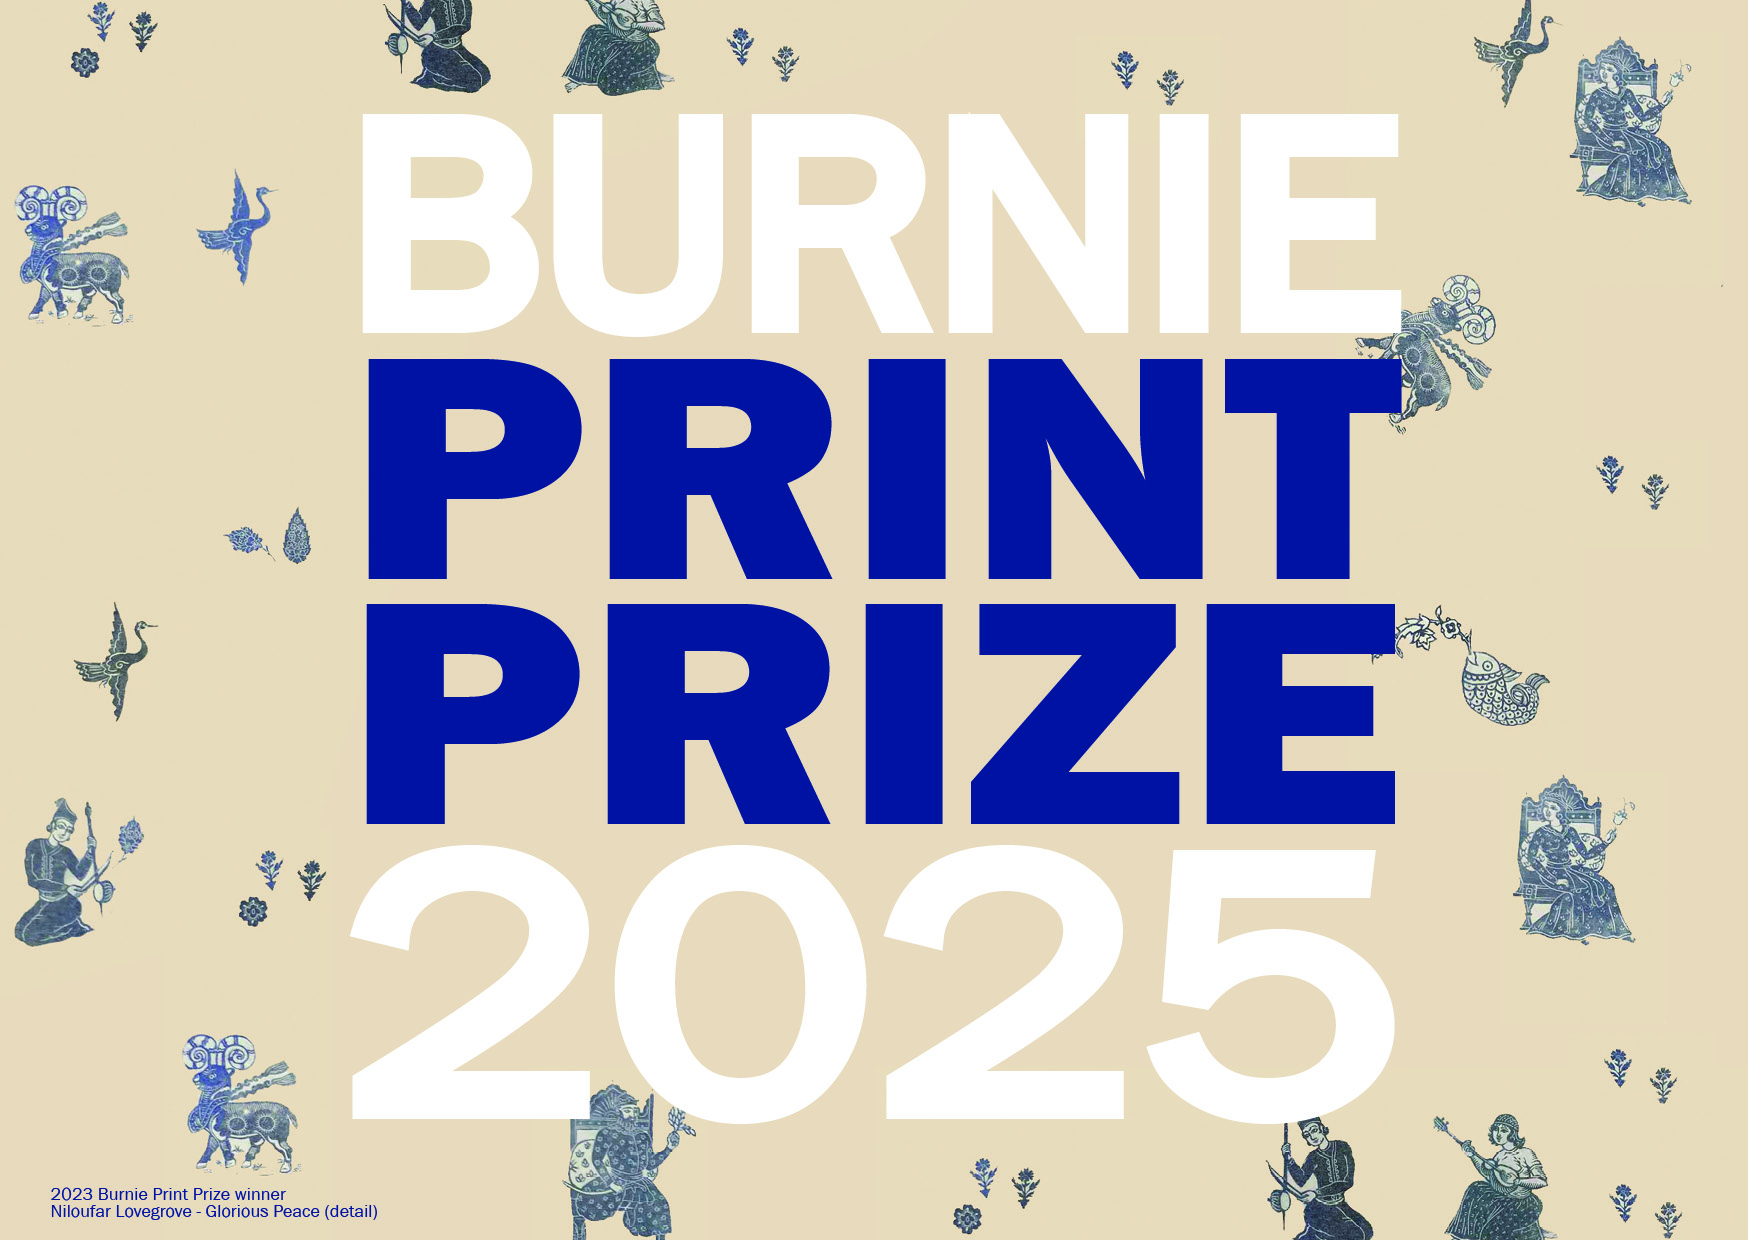 Burnie Print Prize Postcard v1.jpg